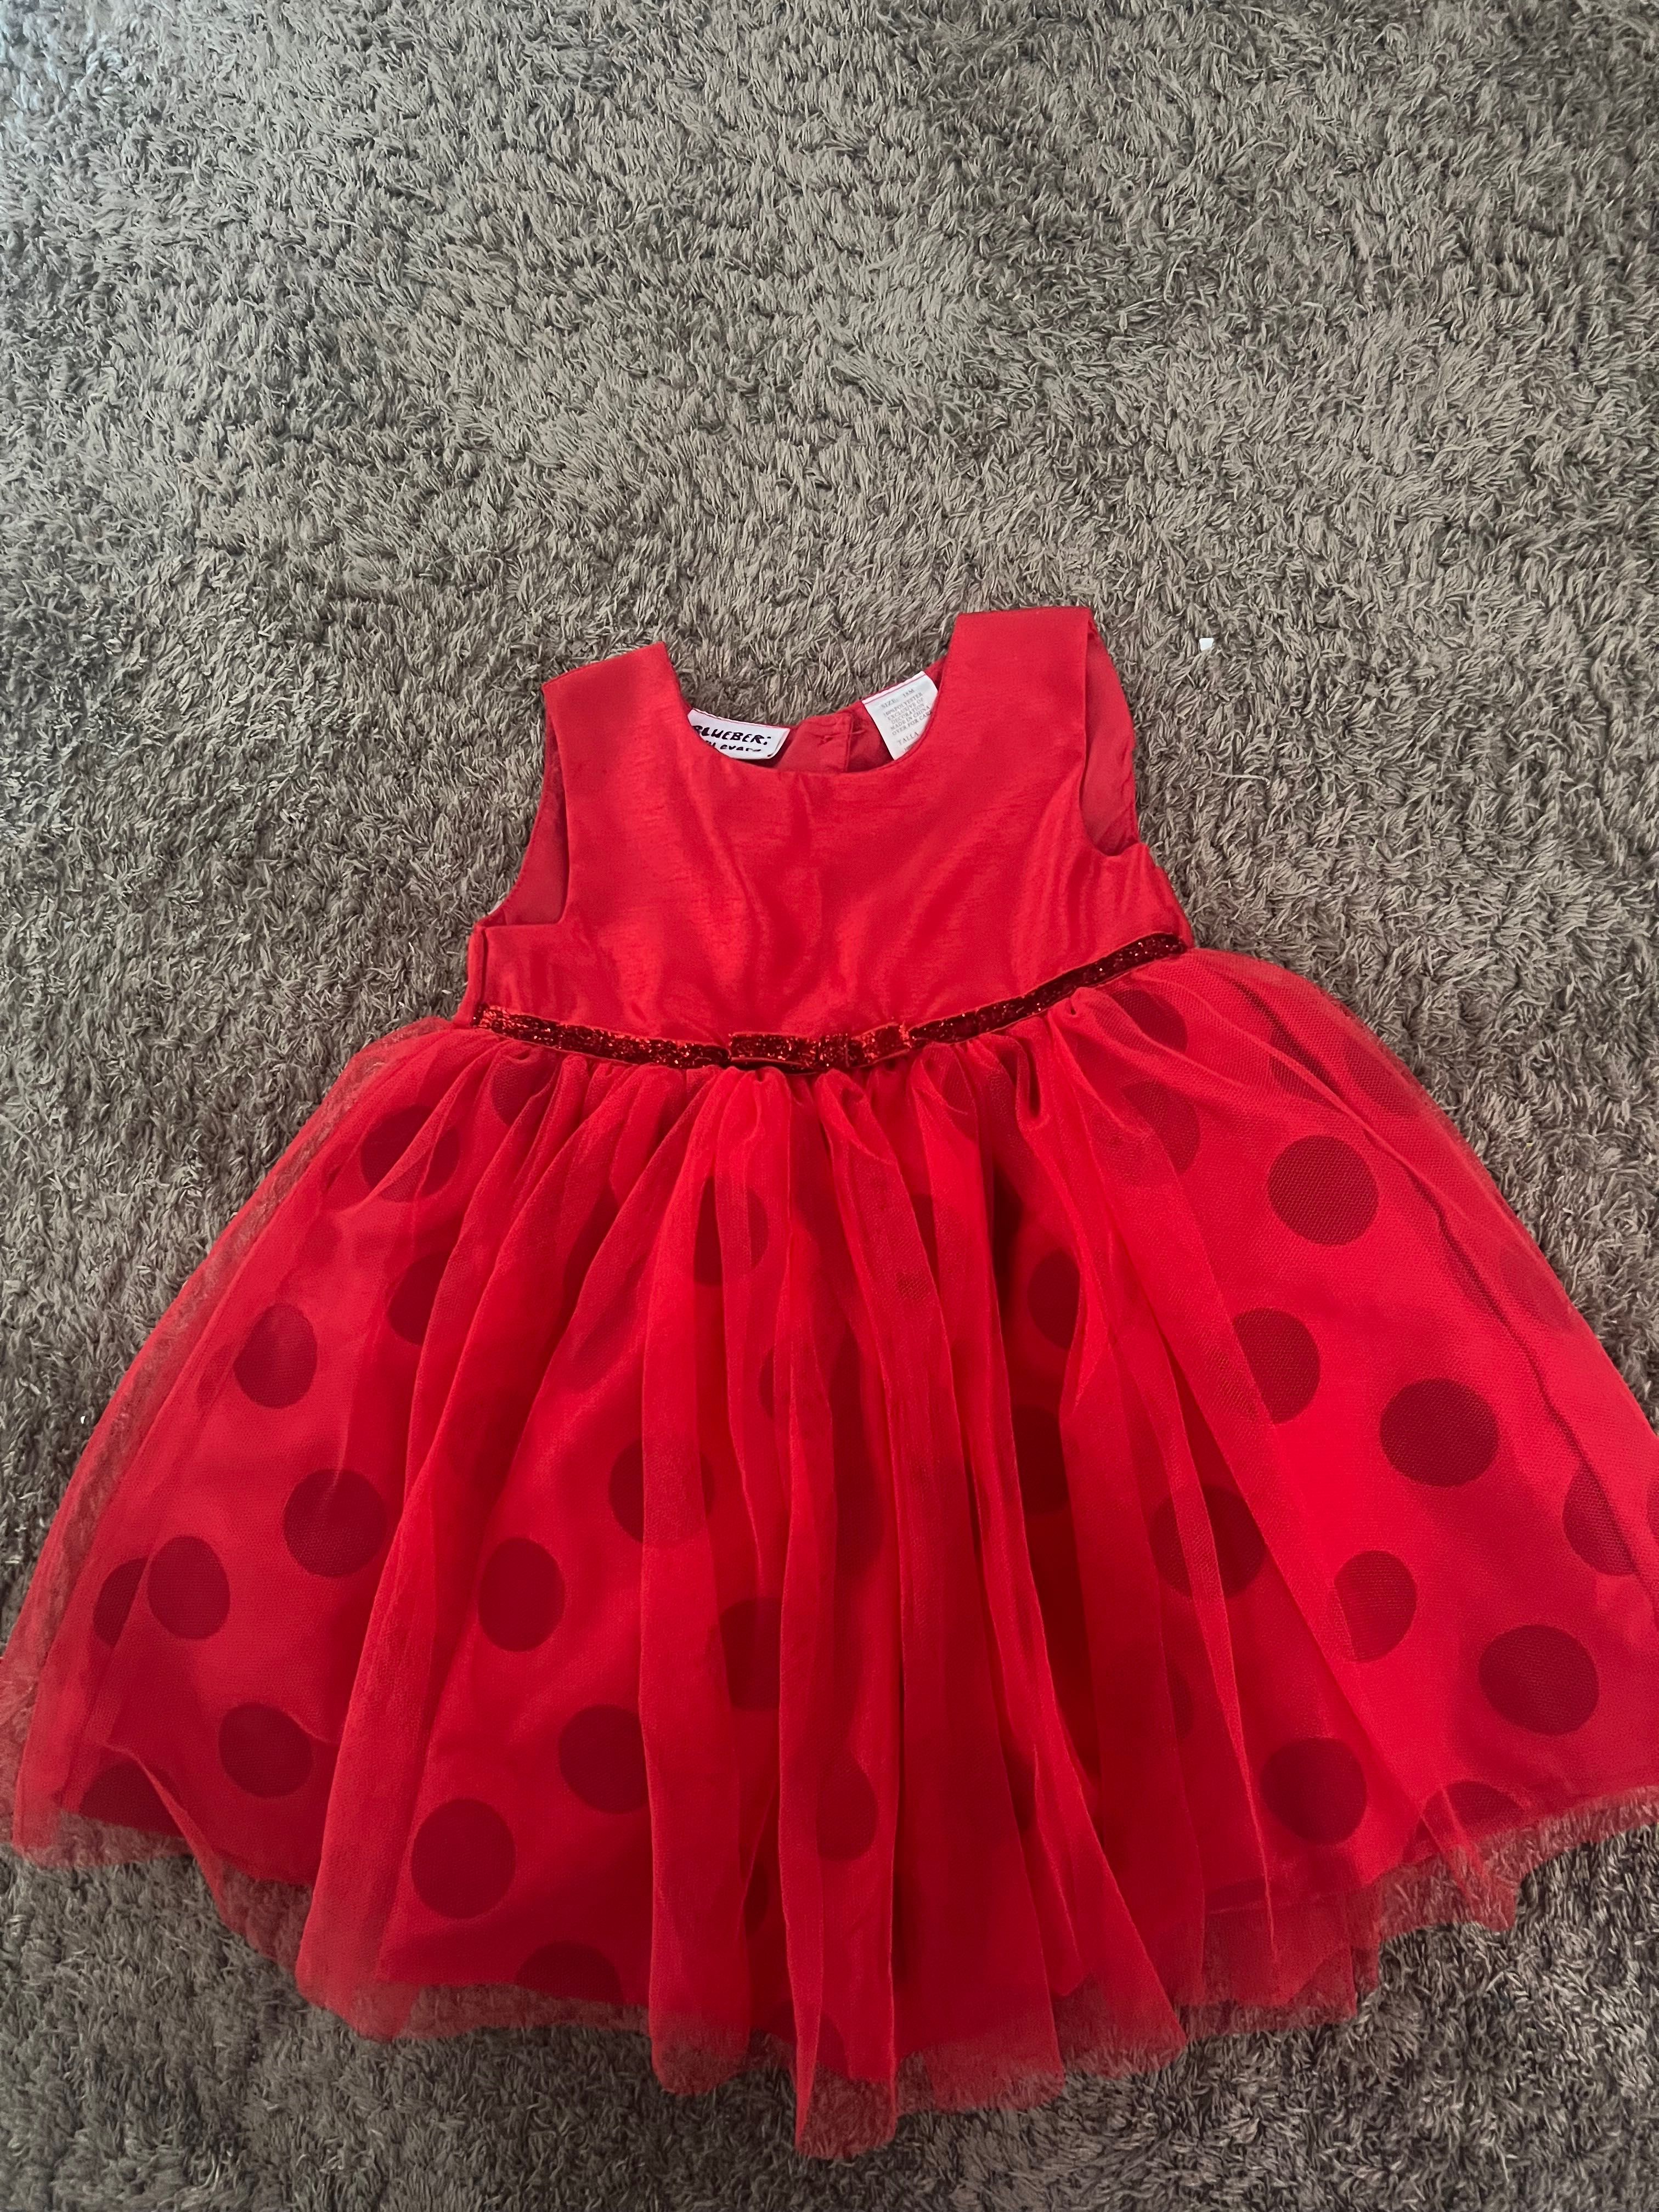 Официална детска червена рокля 18 месеца